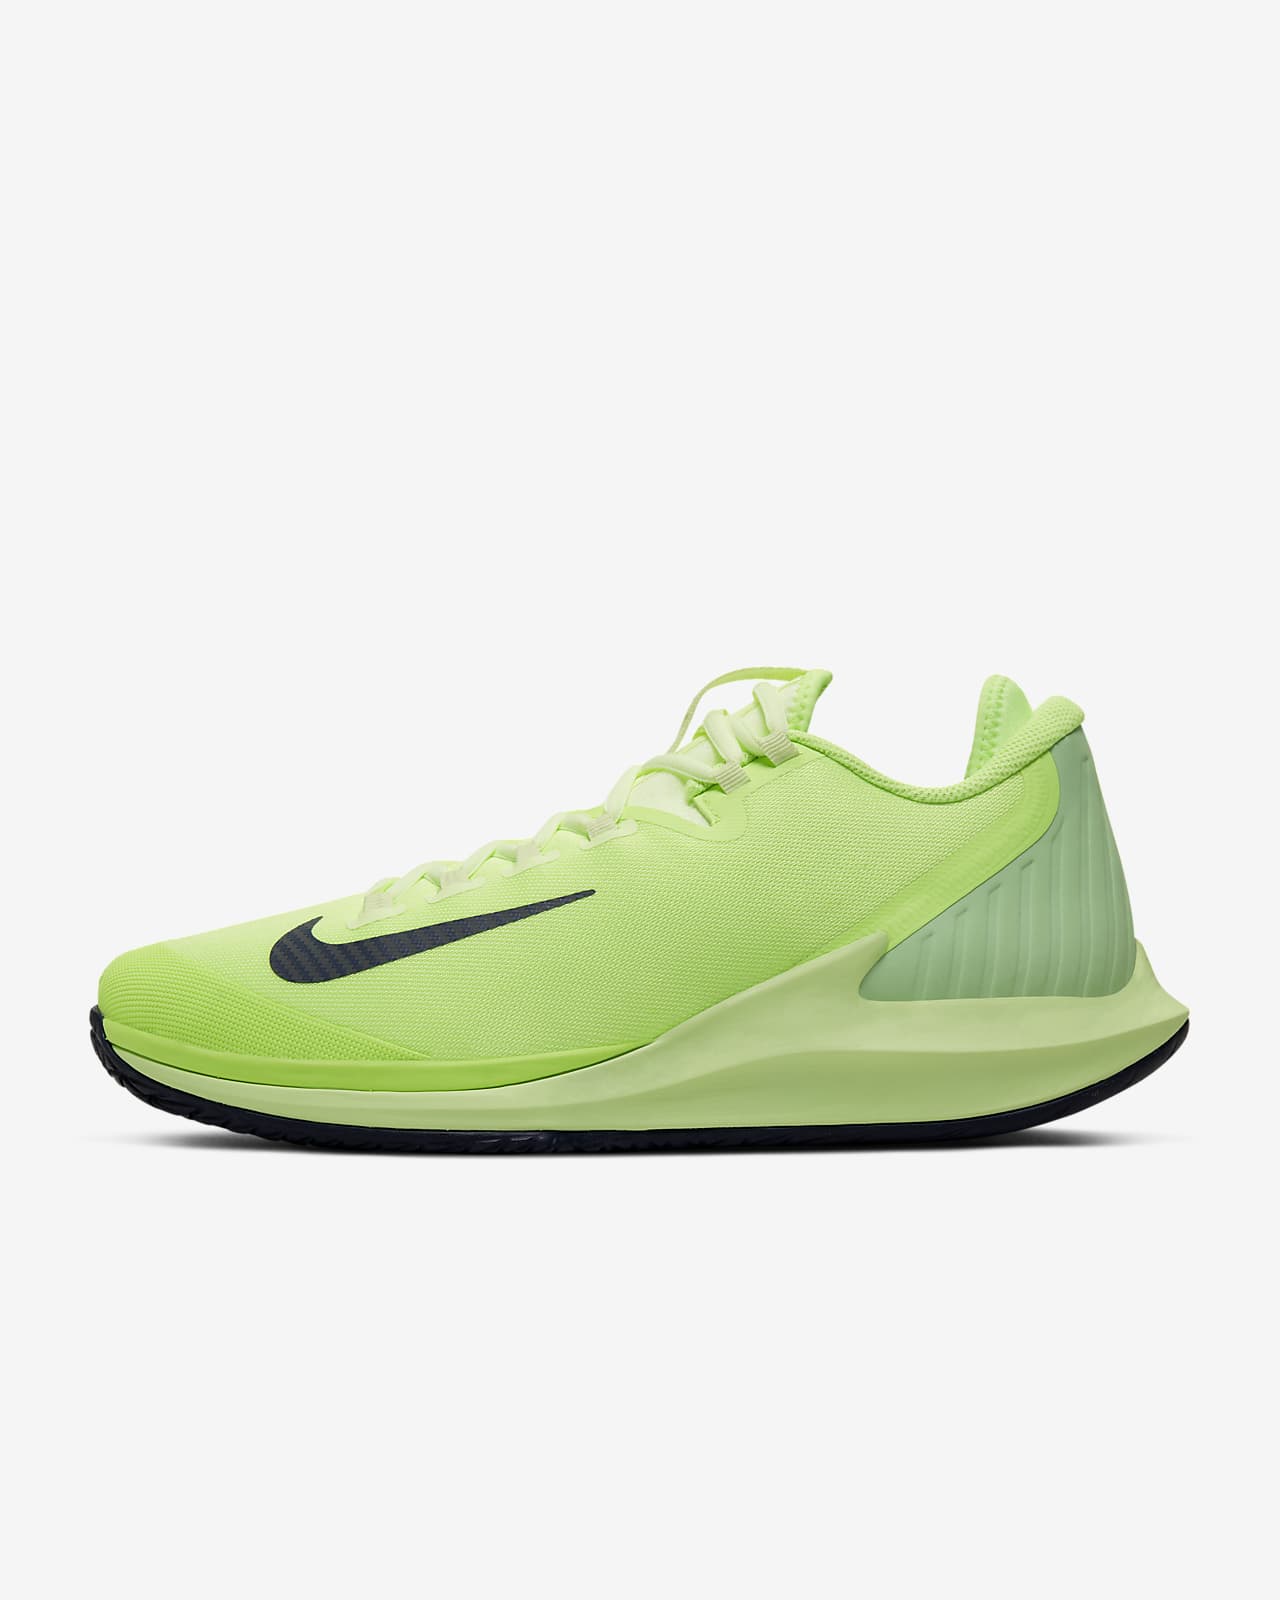 nike tennis shoes green